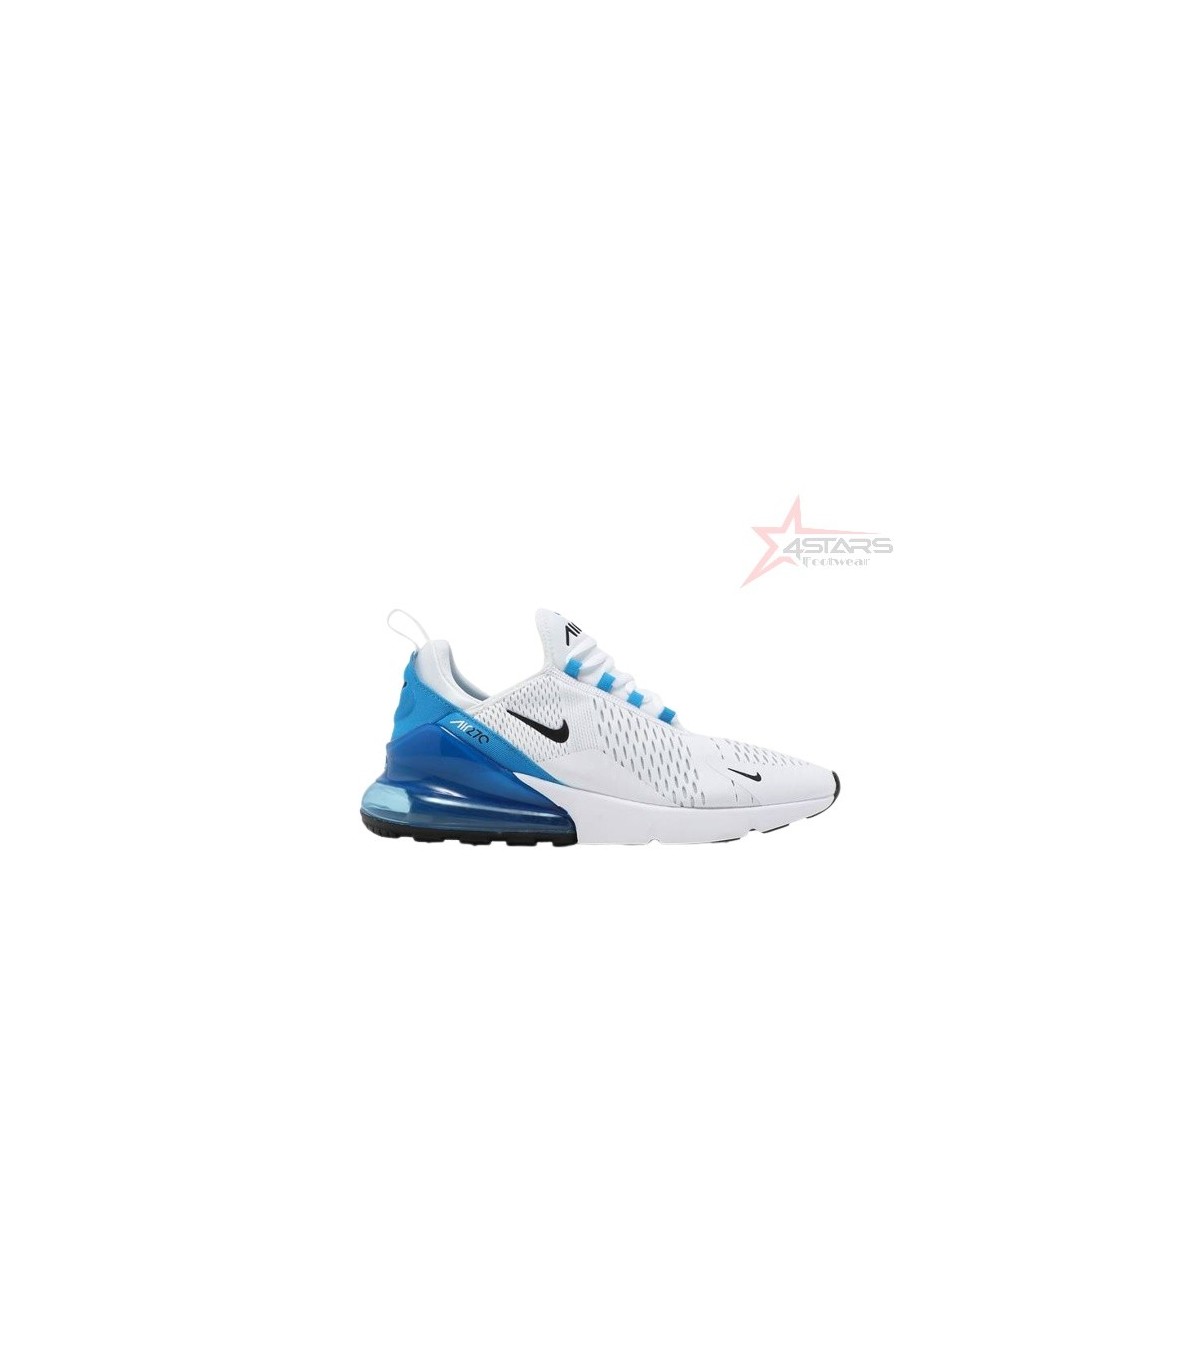 Nike Air Max 270 - White Photo Blue